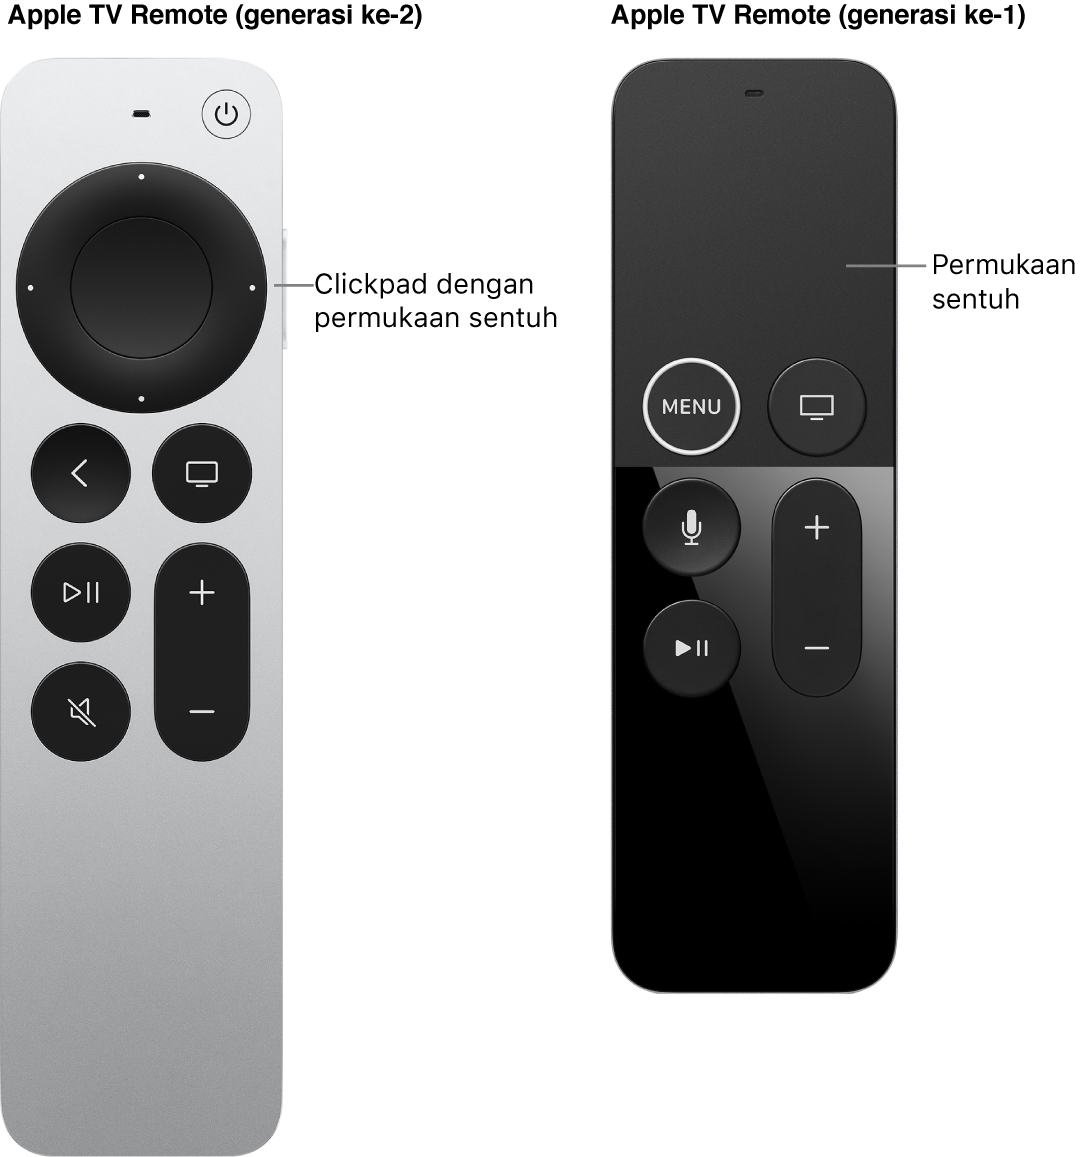 Apple TV Remote (generasi ke-2 dan ke-3) dengan clickpad dan Apple TV Remote (generasi ke-1) dengan permukaan sentuh